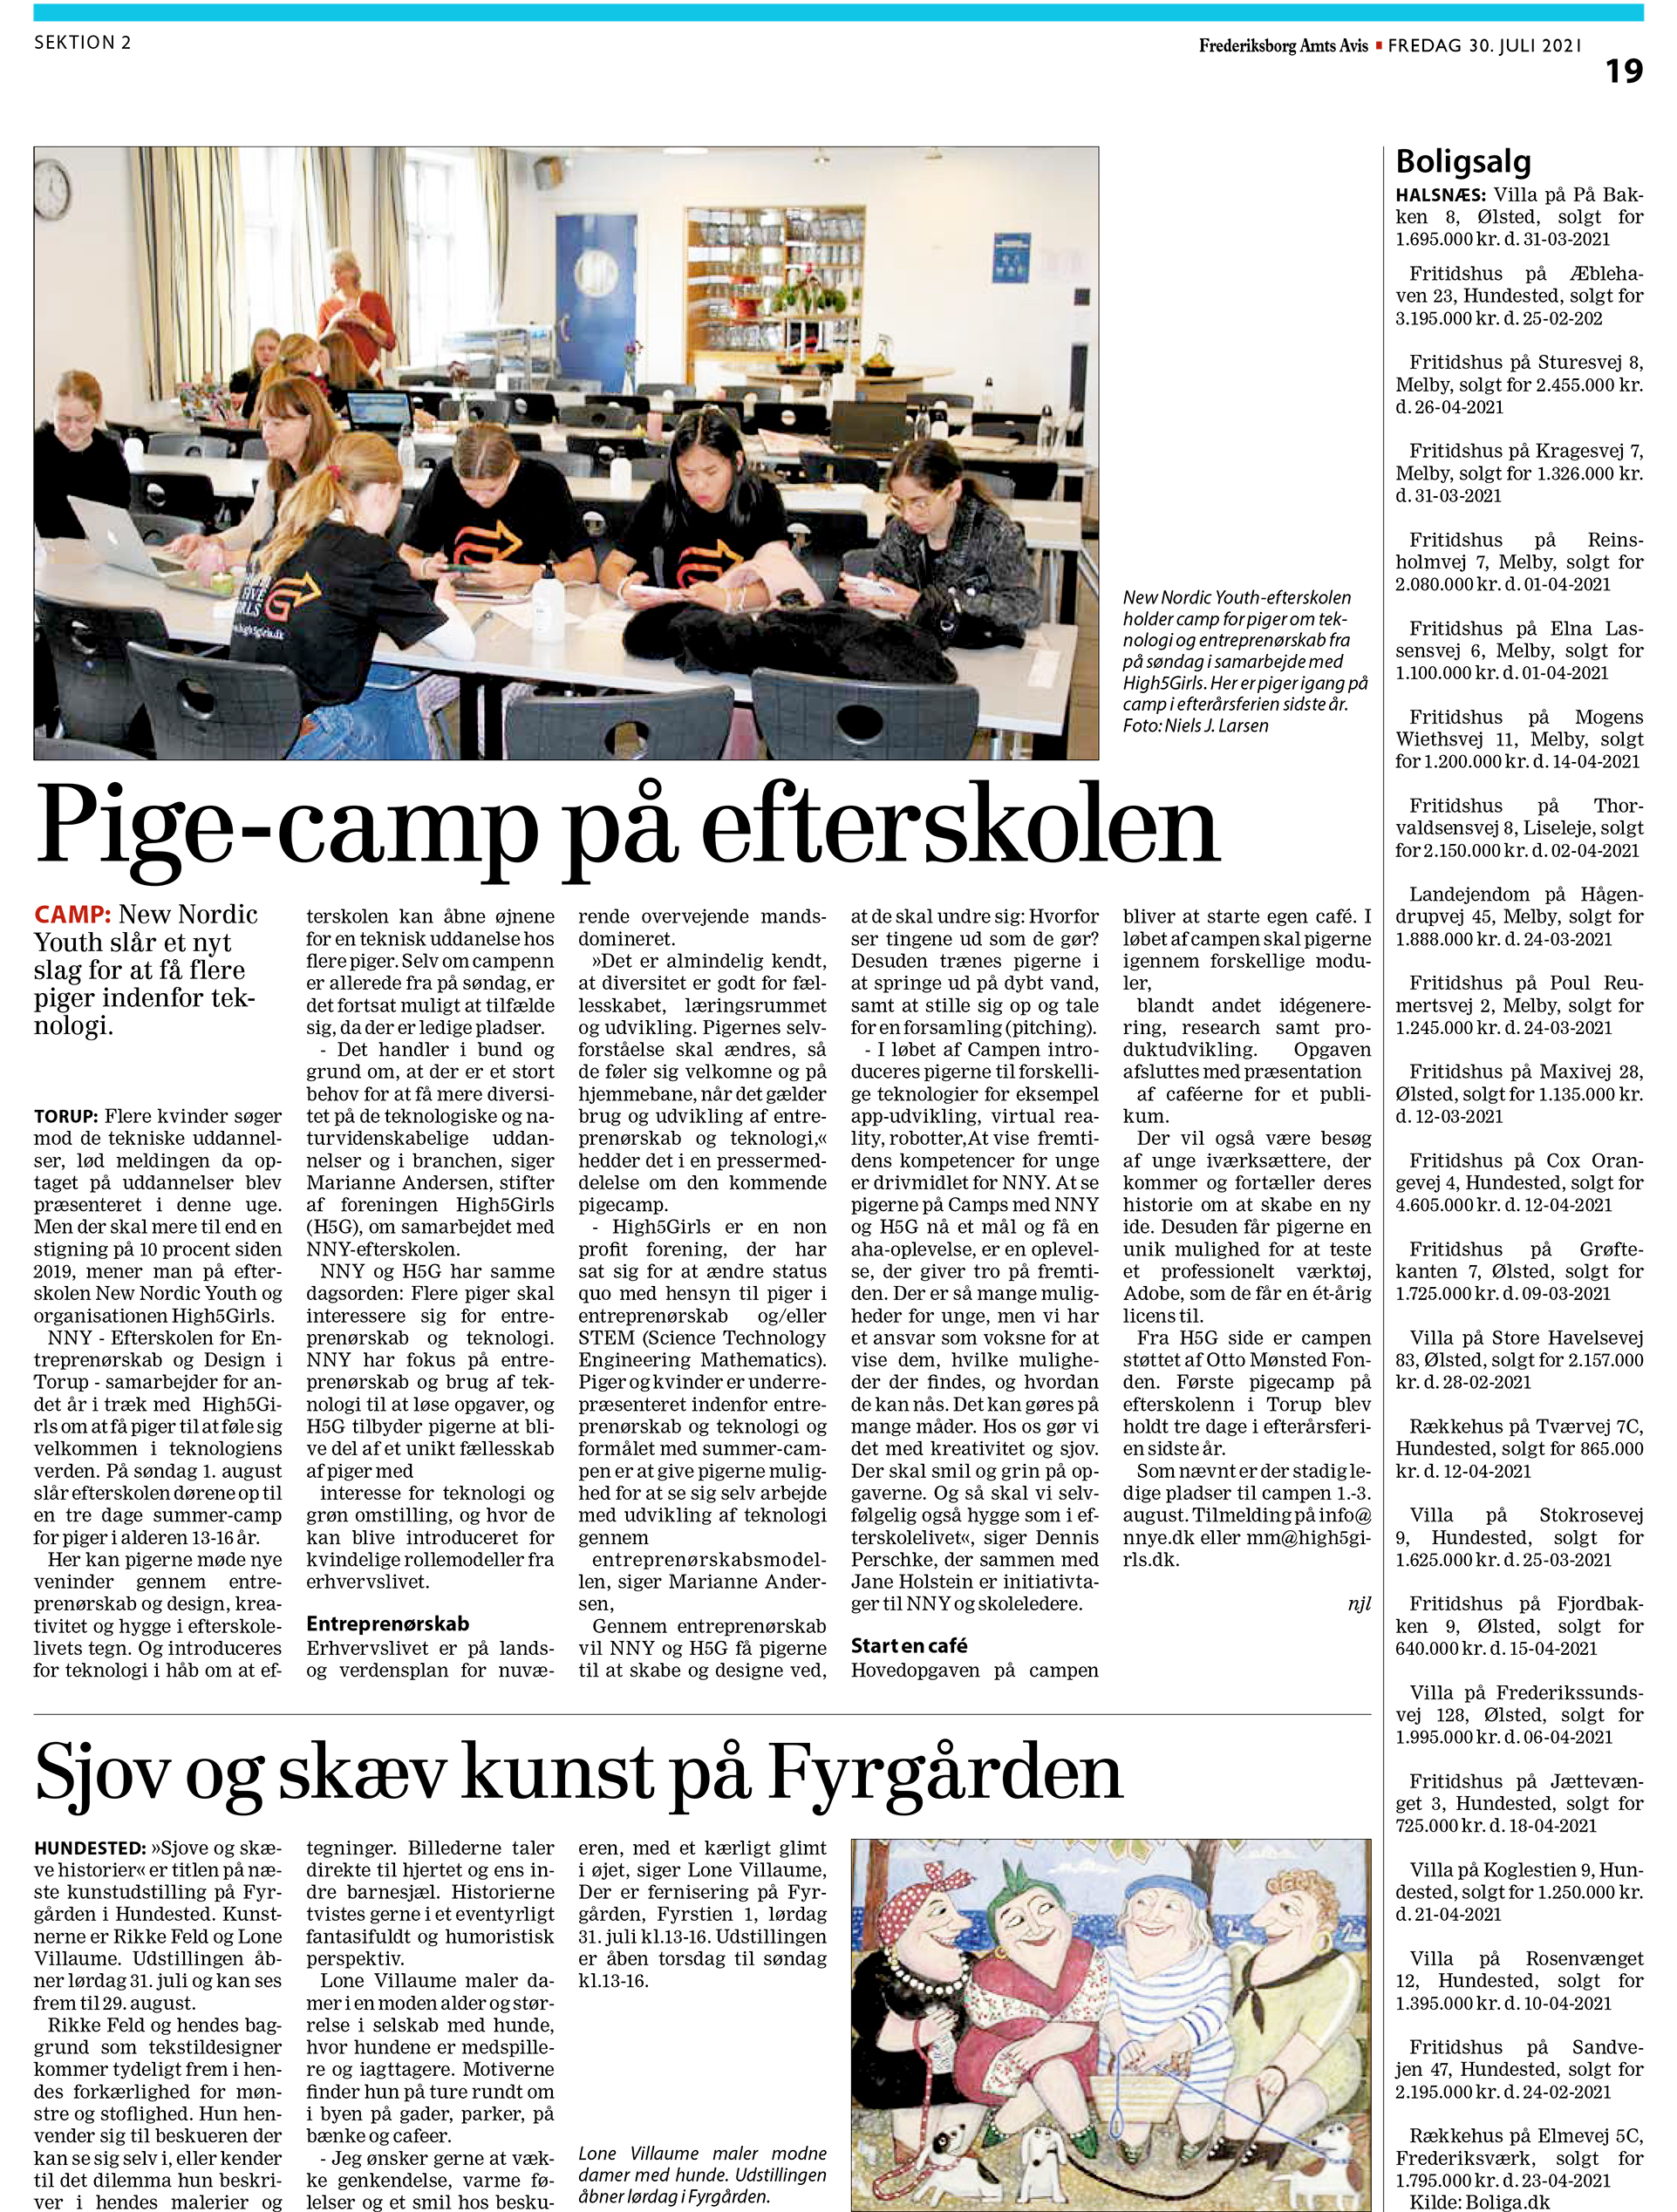 Pige-camp på efterskolen frederiksberg amtsavis high5girls